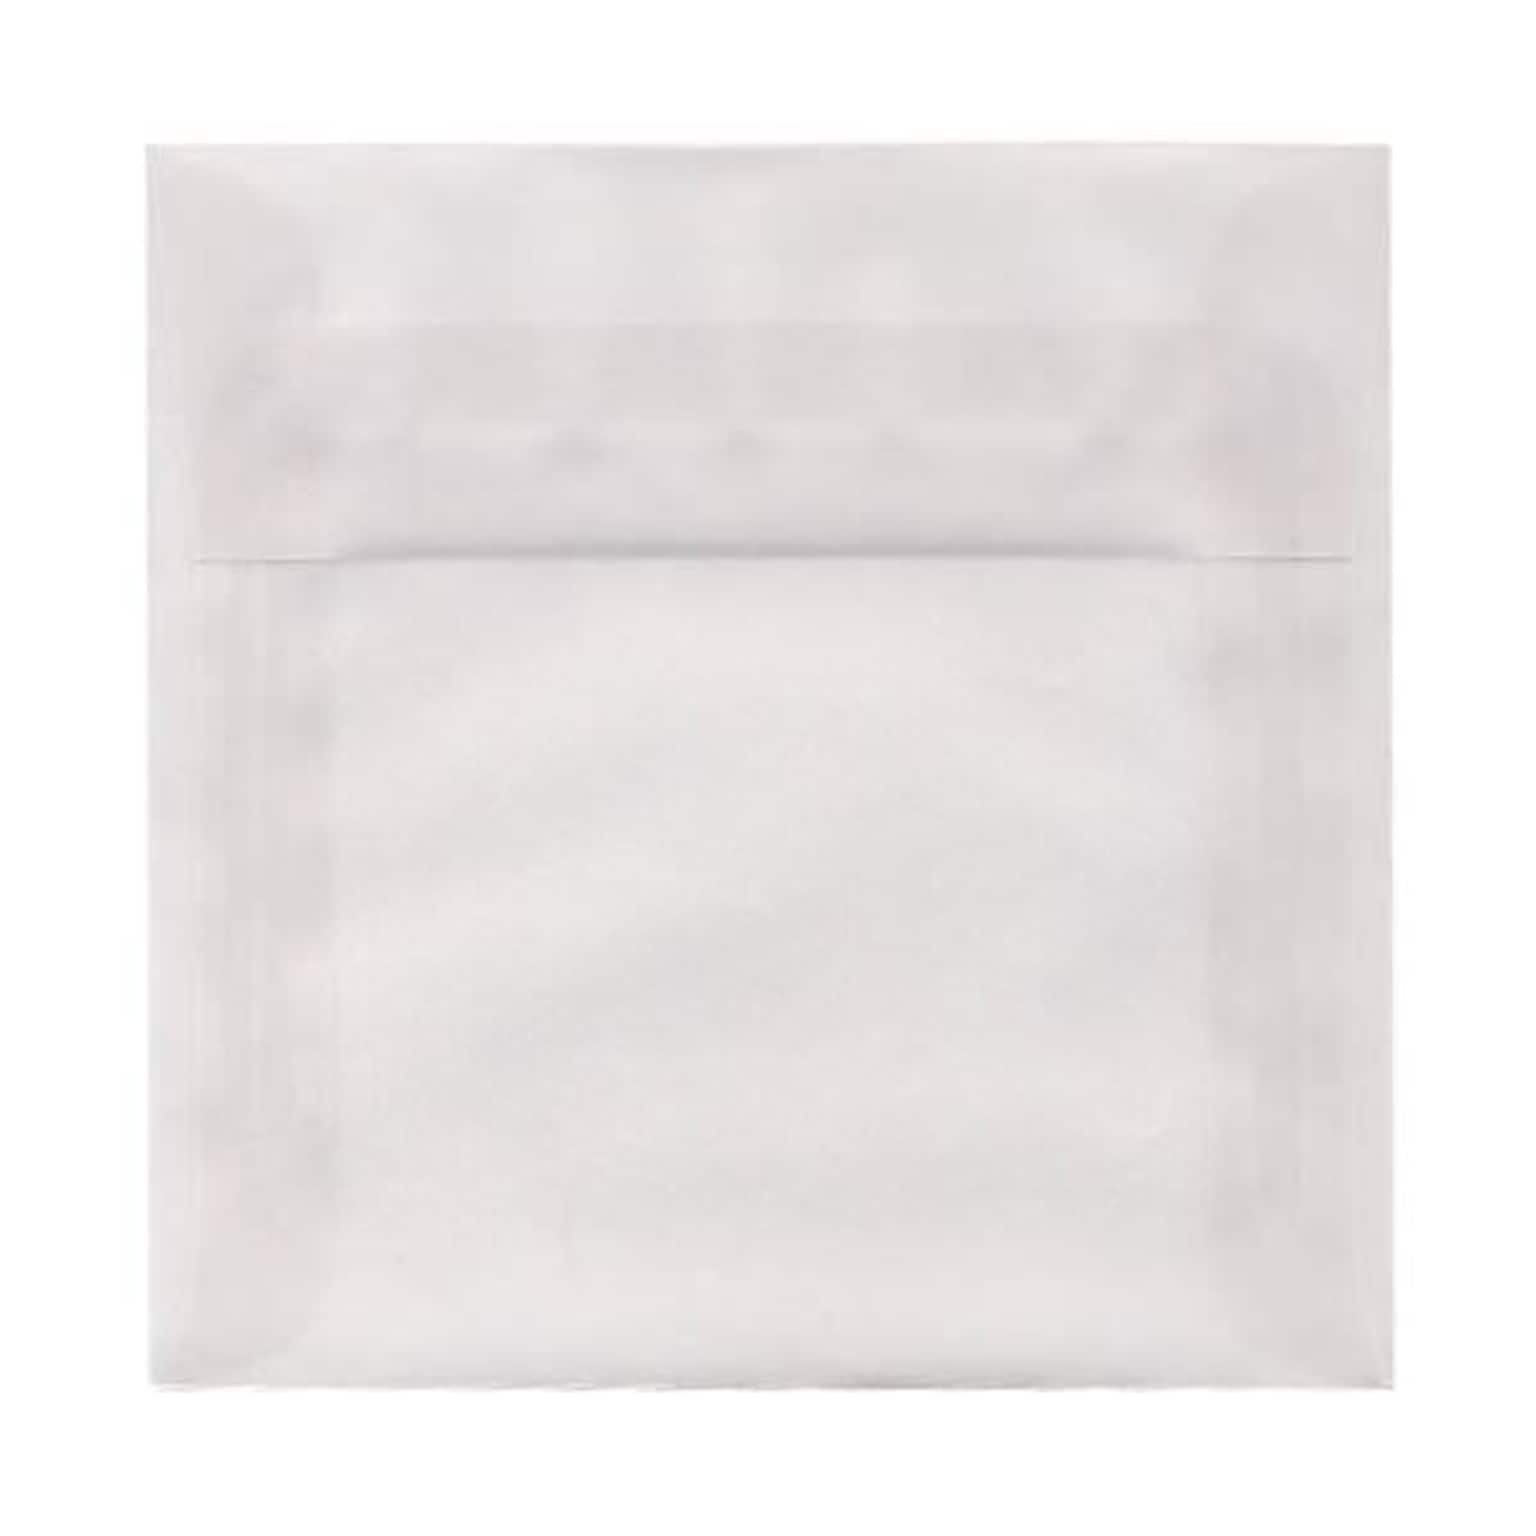 JAM Paper 7.5 x 7.5 Square Translucent Vellum Invitation Envelopes, Clear, 50/Pack (81981I)